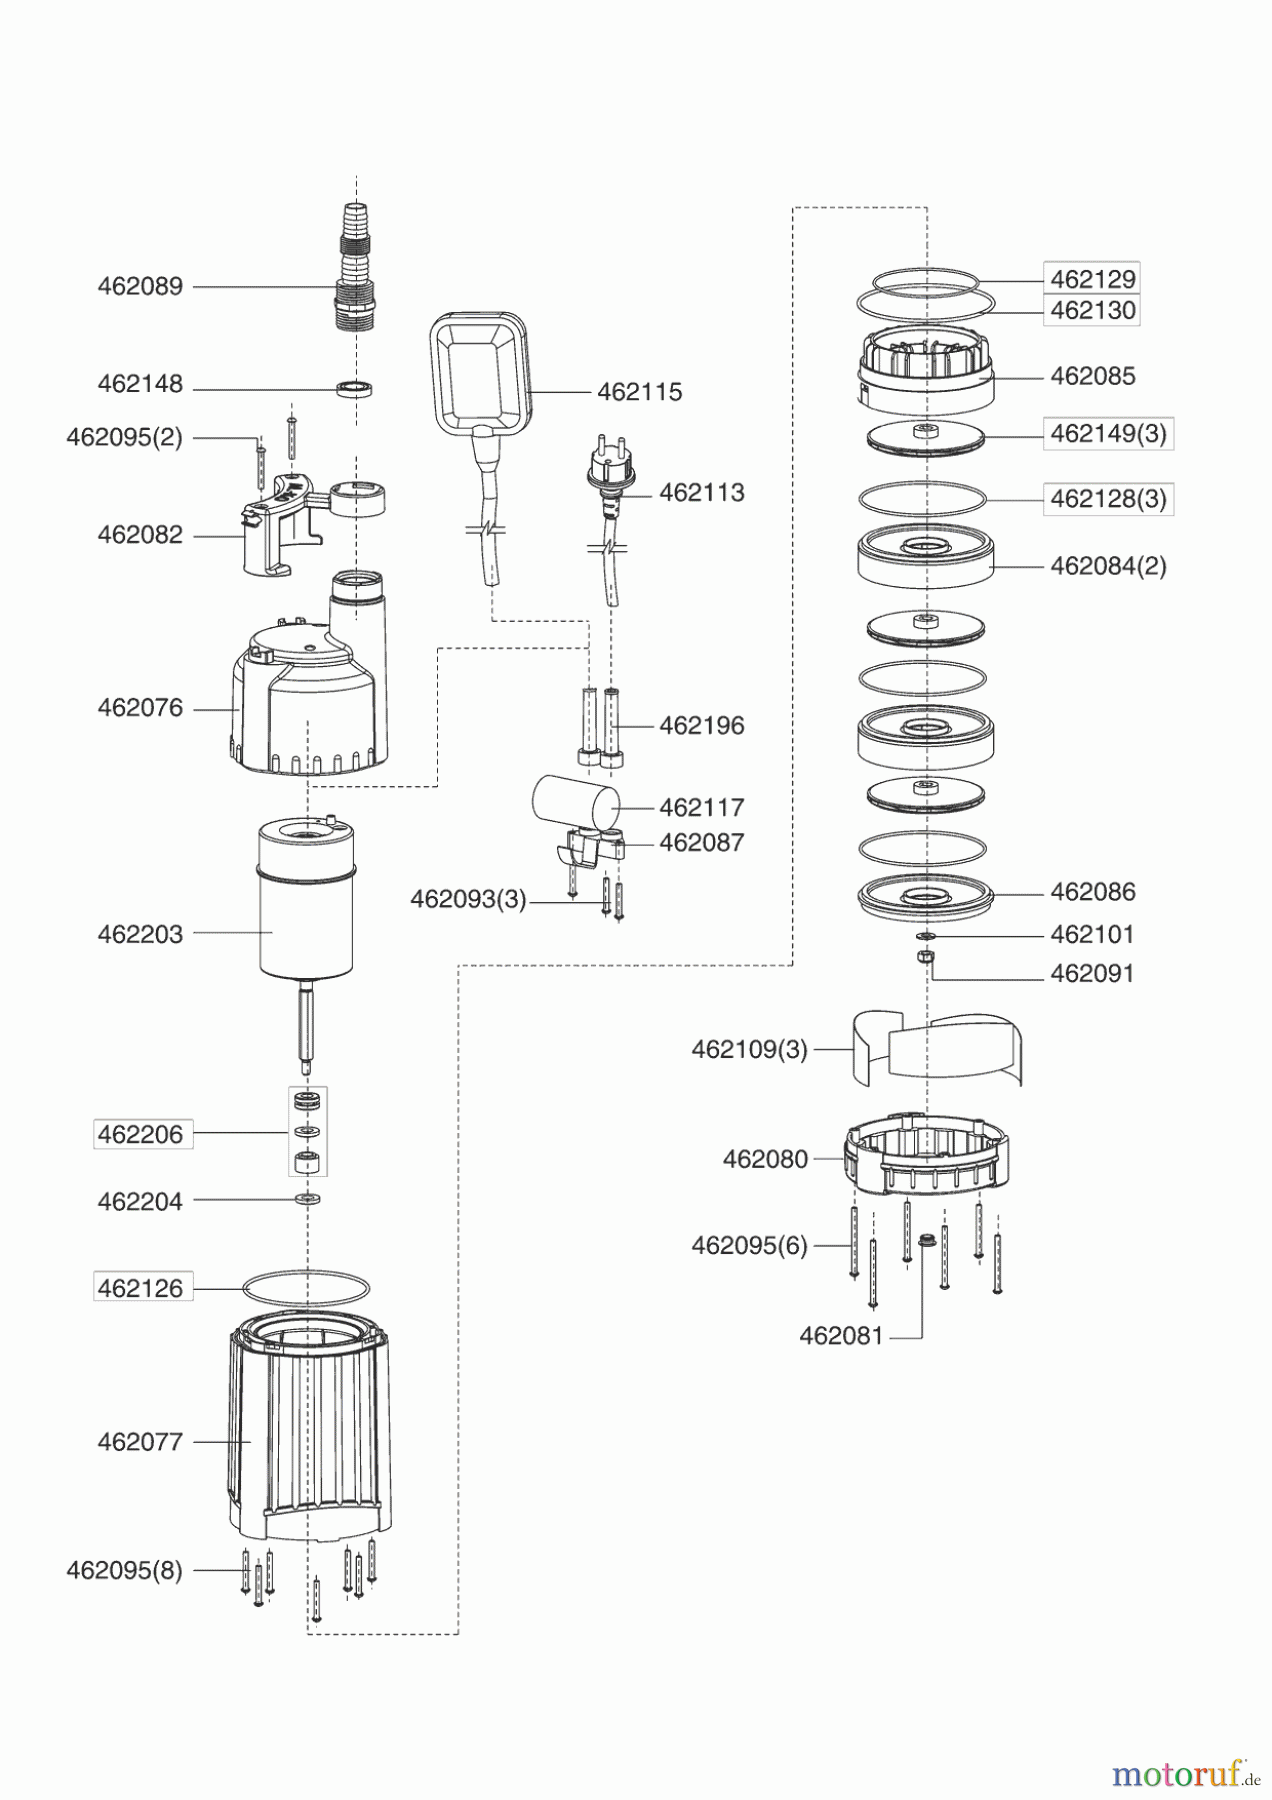  AL-KO Wassertechnik Tauchdruckpumpen TDS 1001-3  12/2005 Seite 1